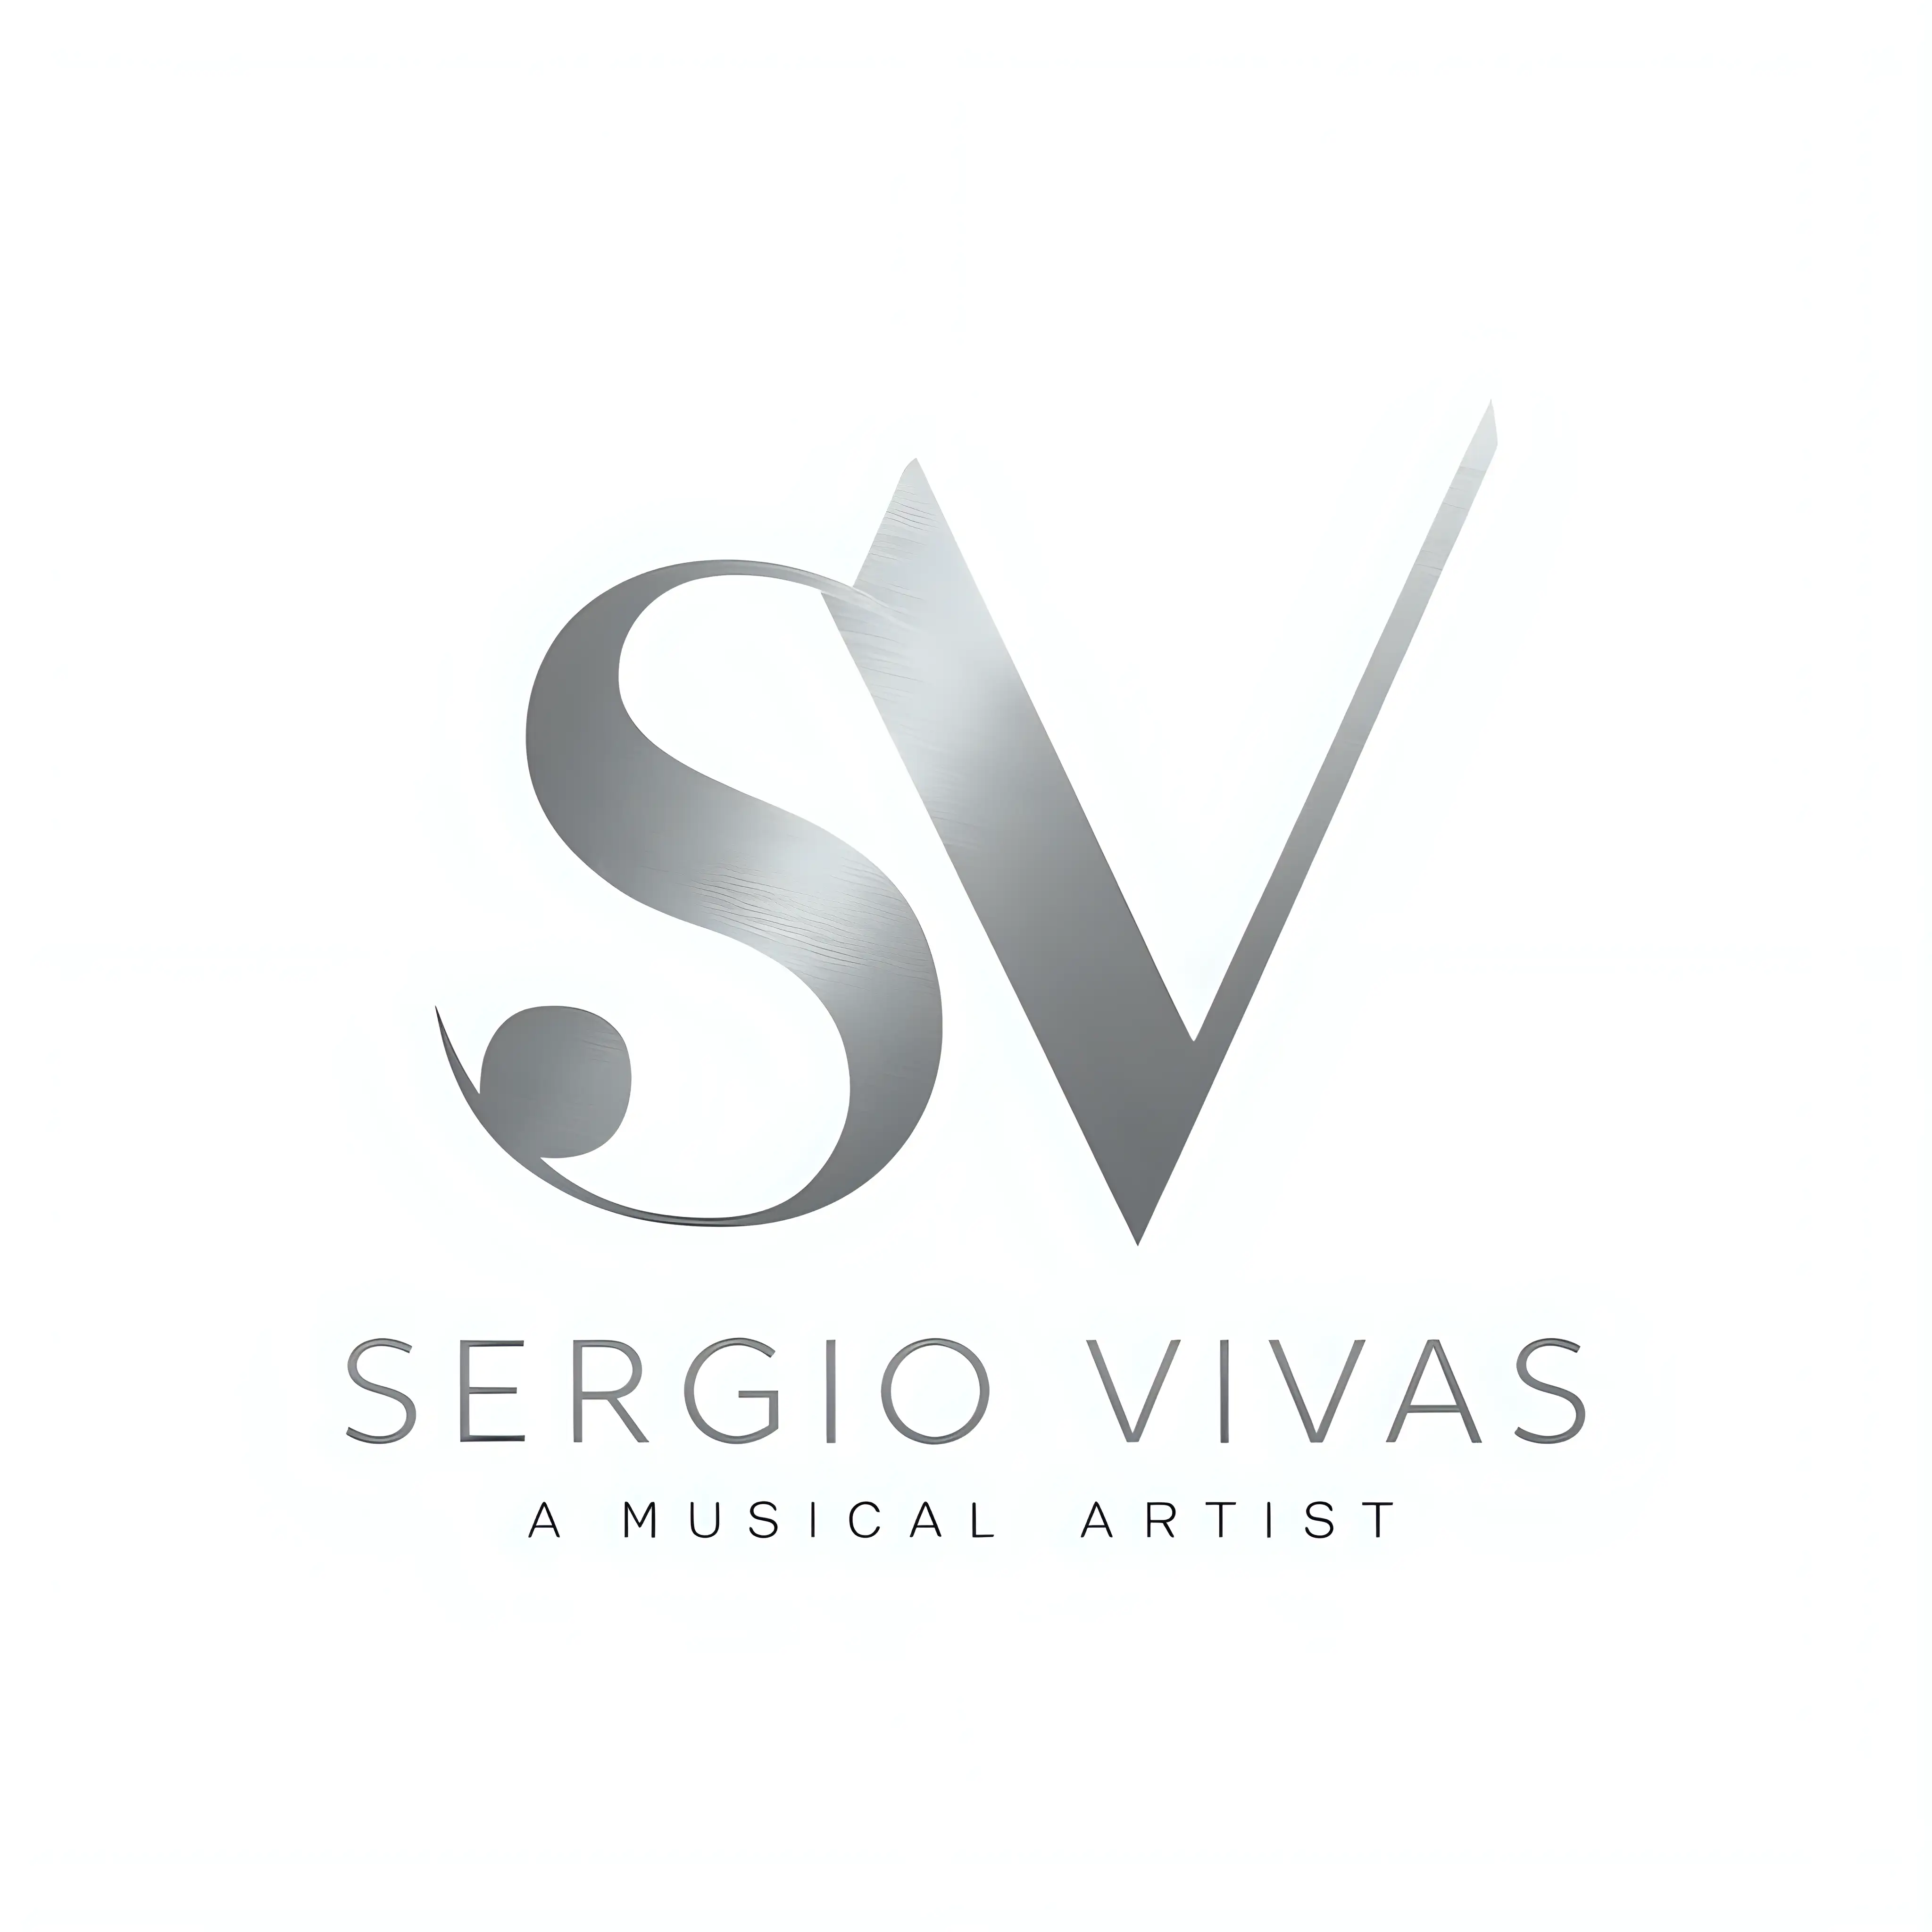 Genera un logo para el artista musical ‘SERGIO VIVAS’ plateado